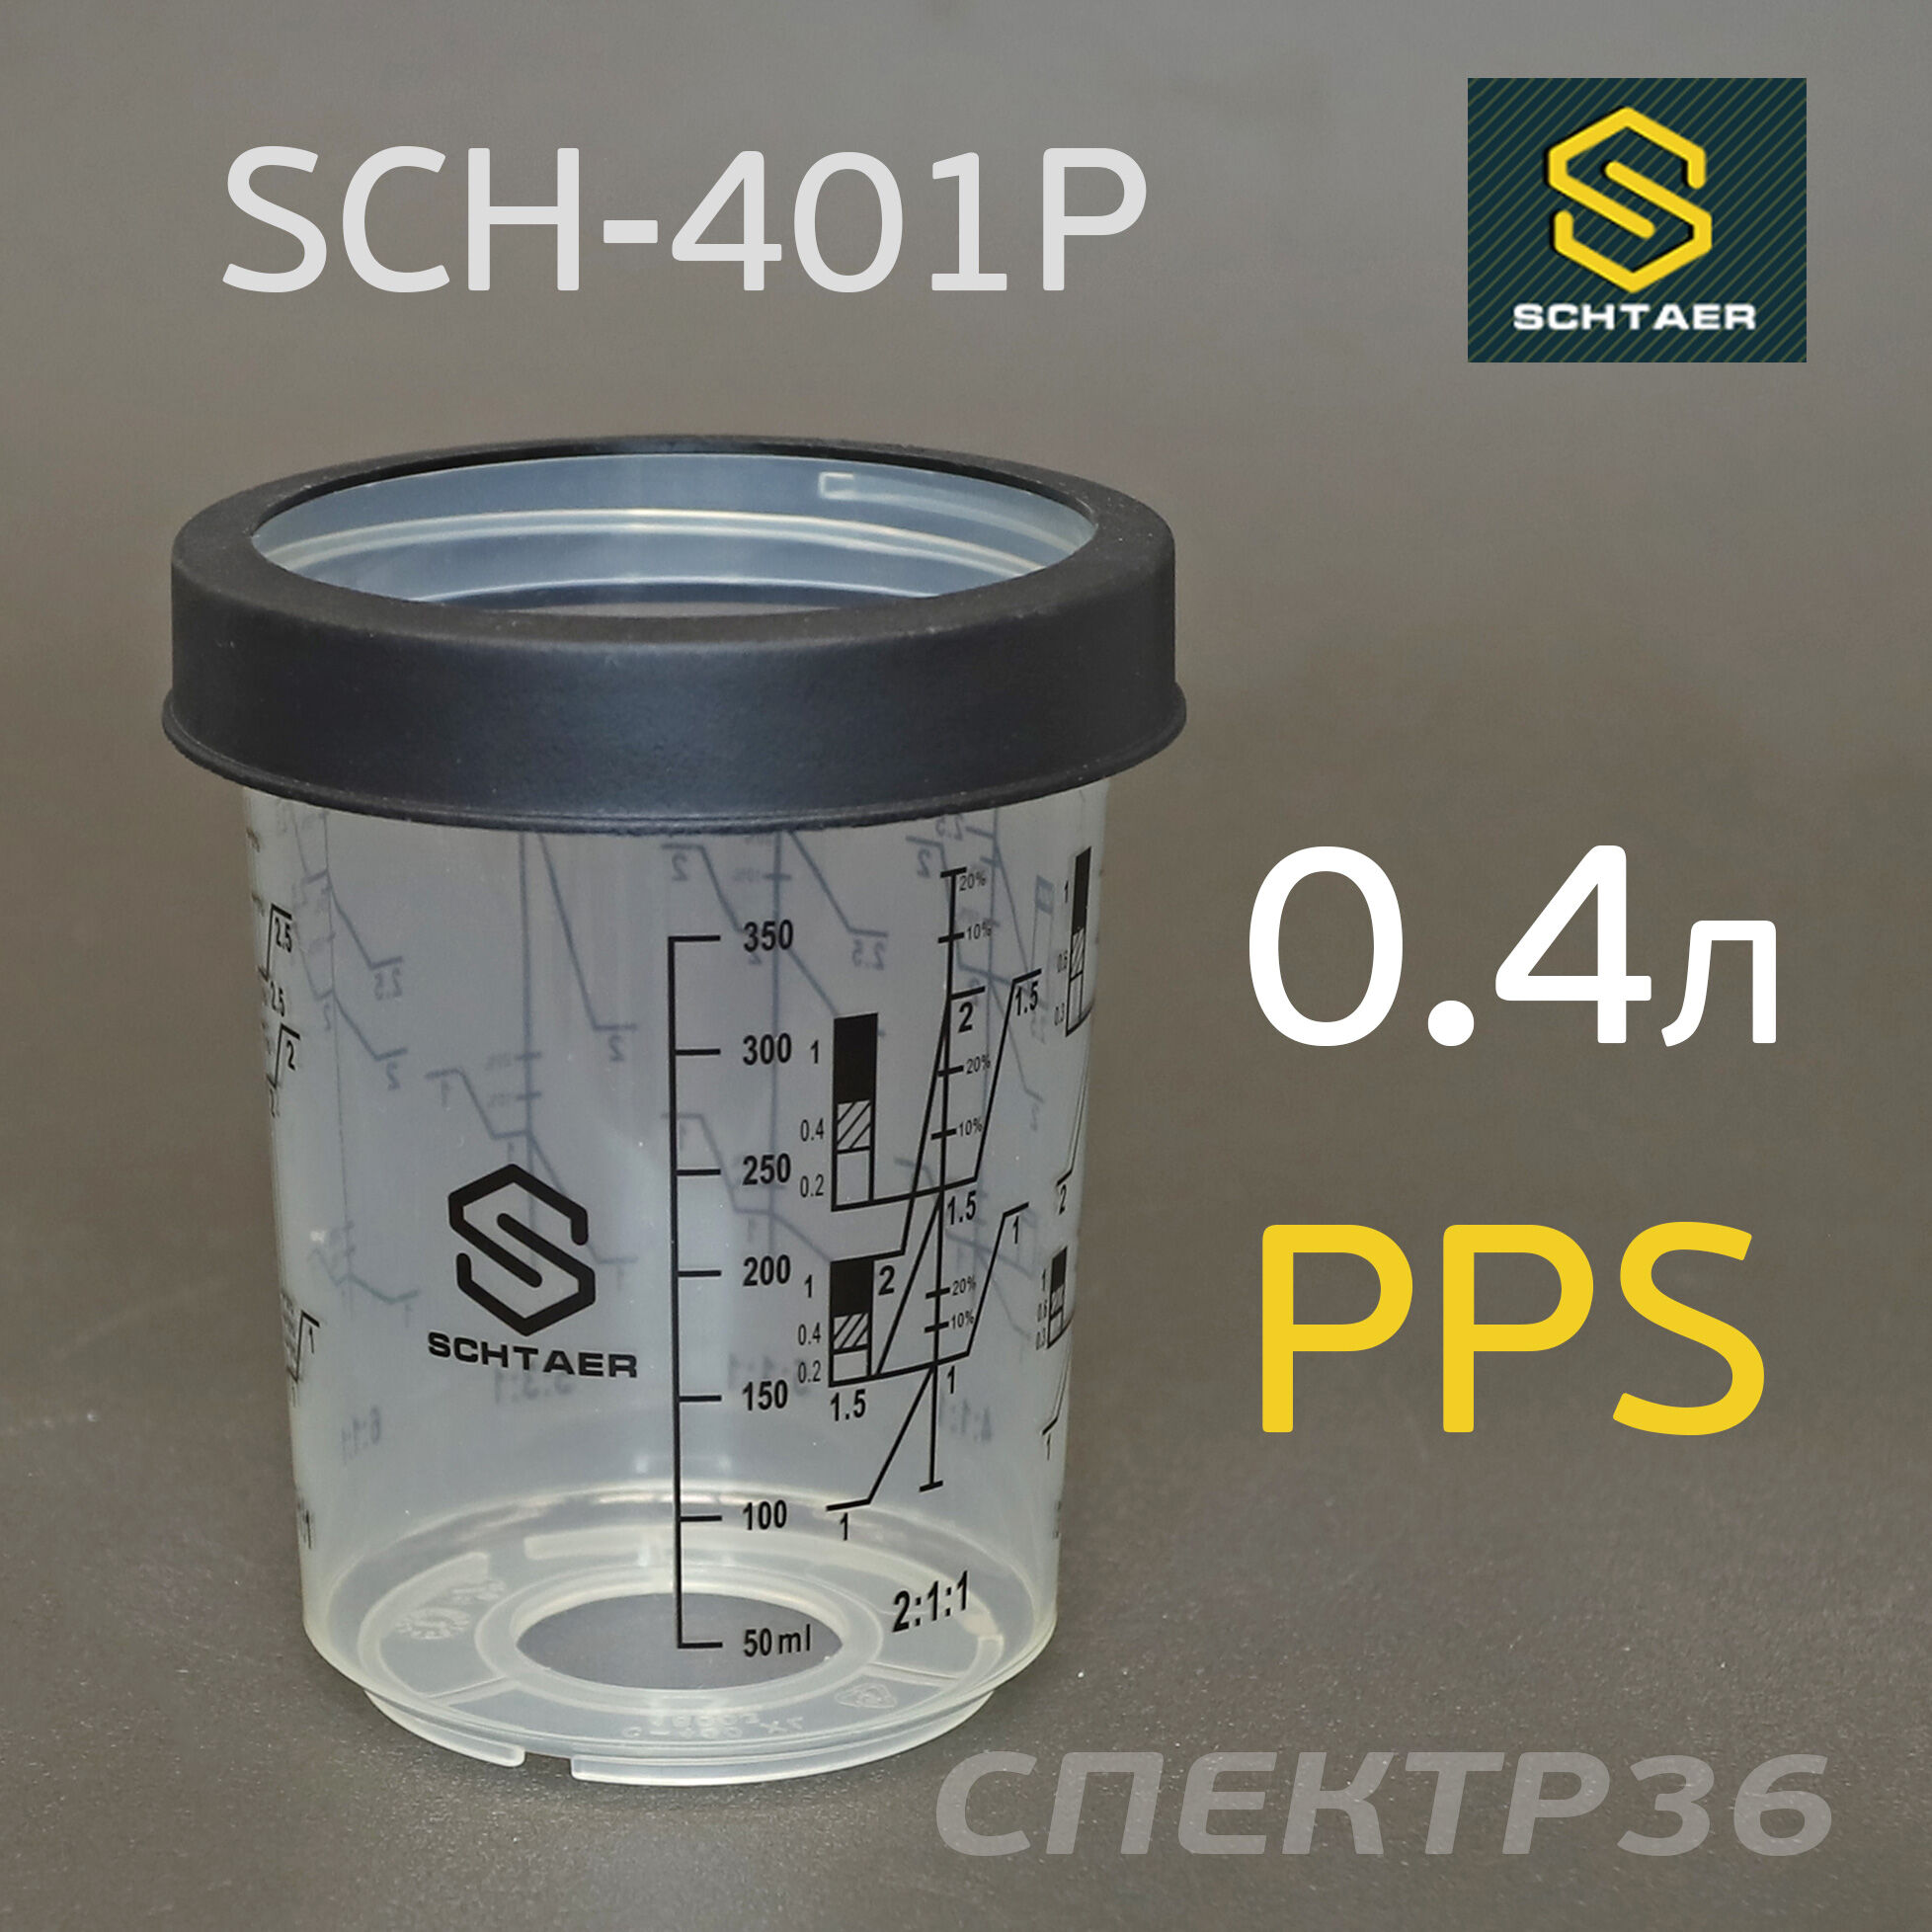 Мерный многоразовый стакан PPS (400мл) Schtaer